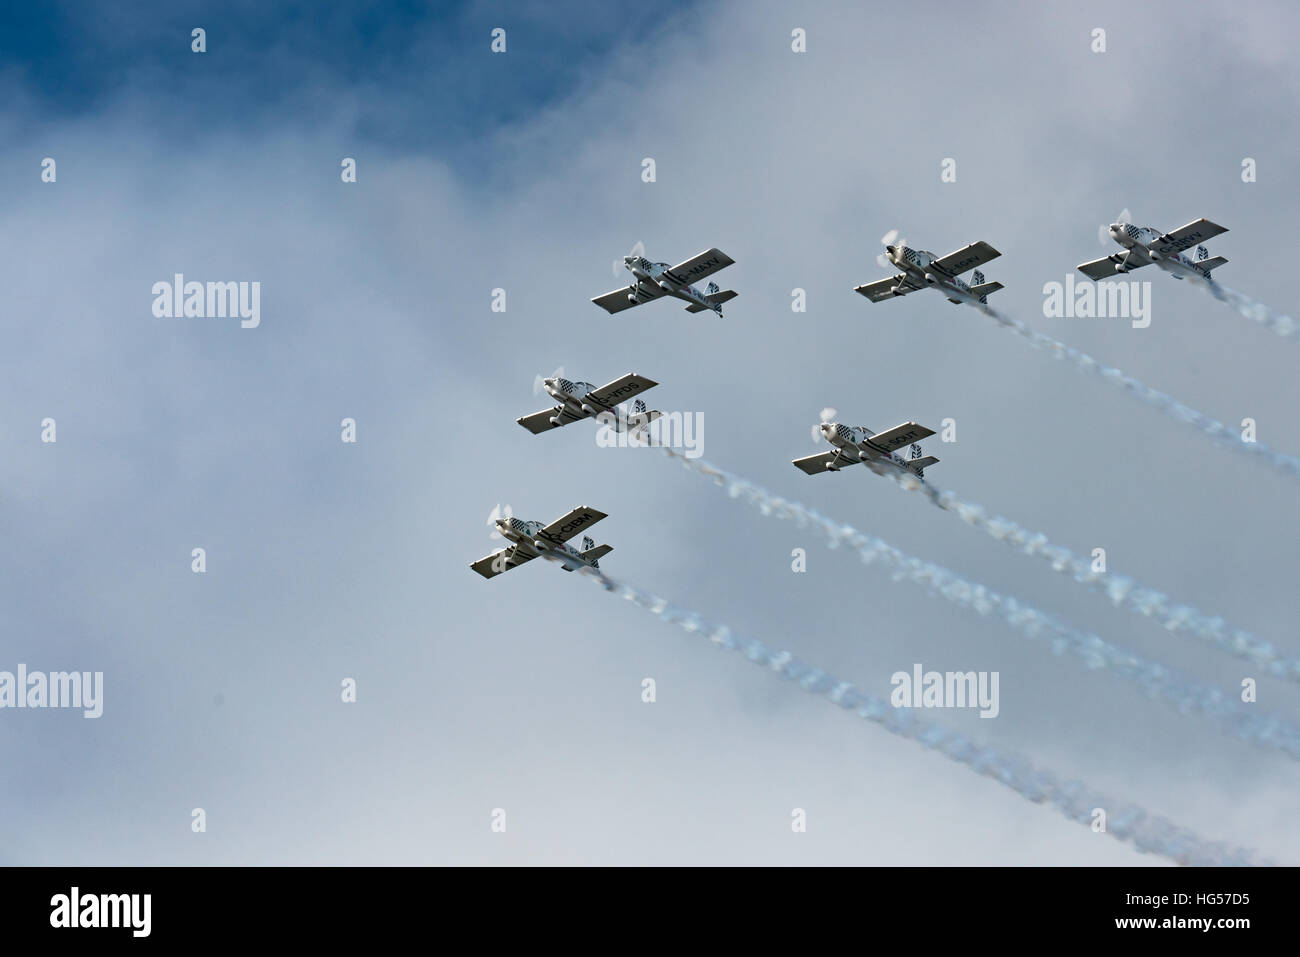 Team Raven Display Team Höchstleistungen der 2016 Rhyl Air Show Stockfoto